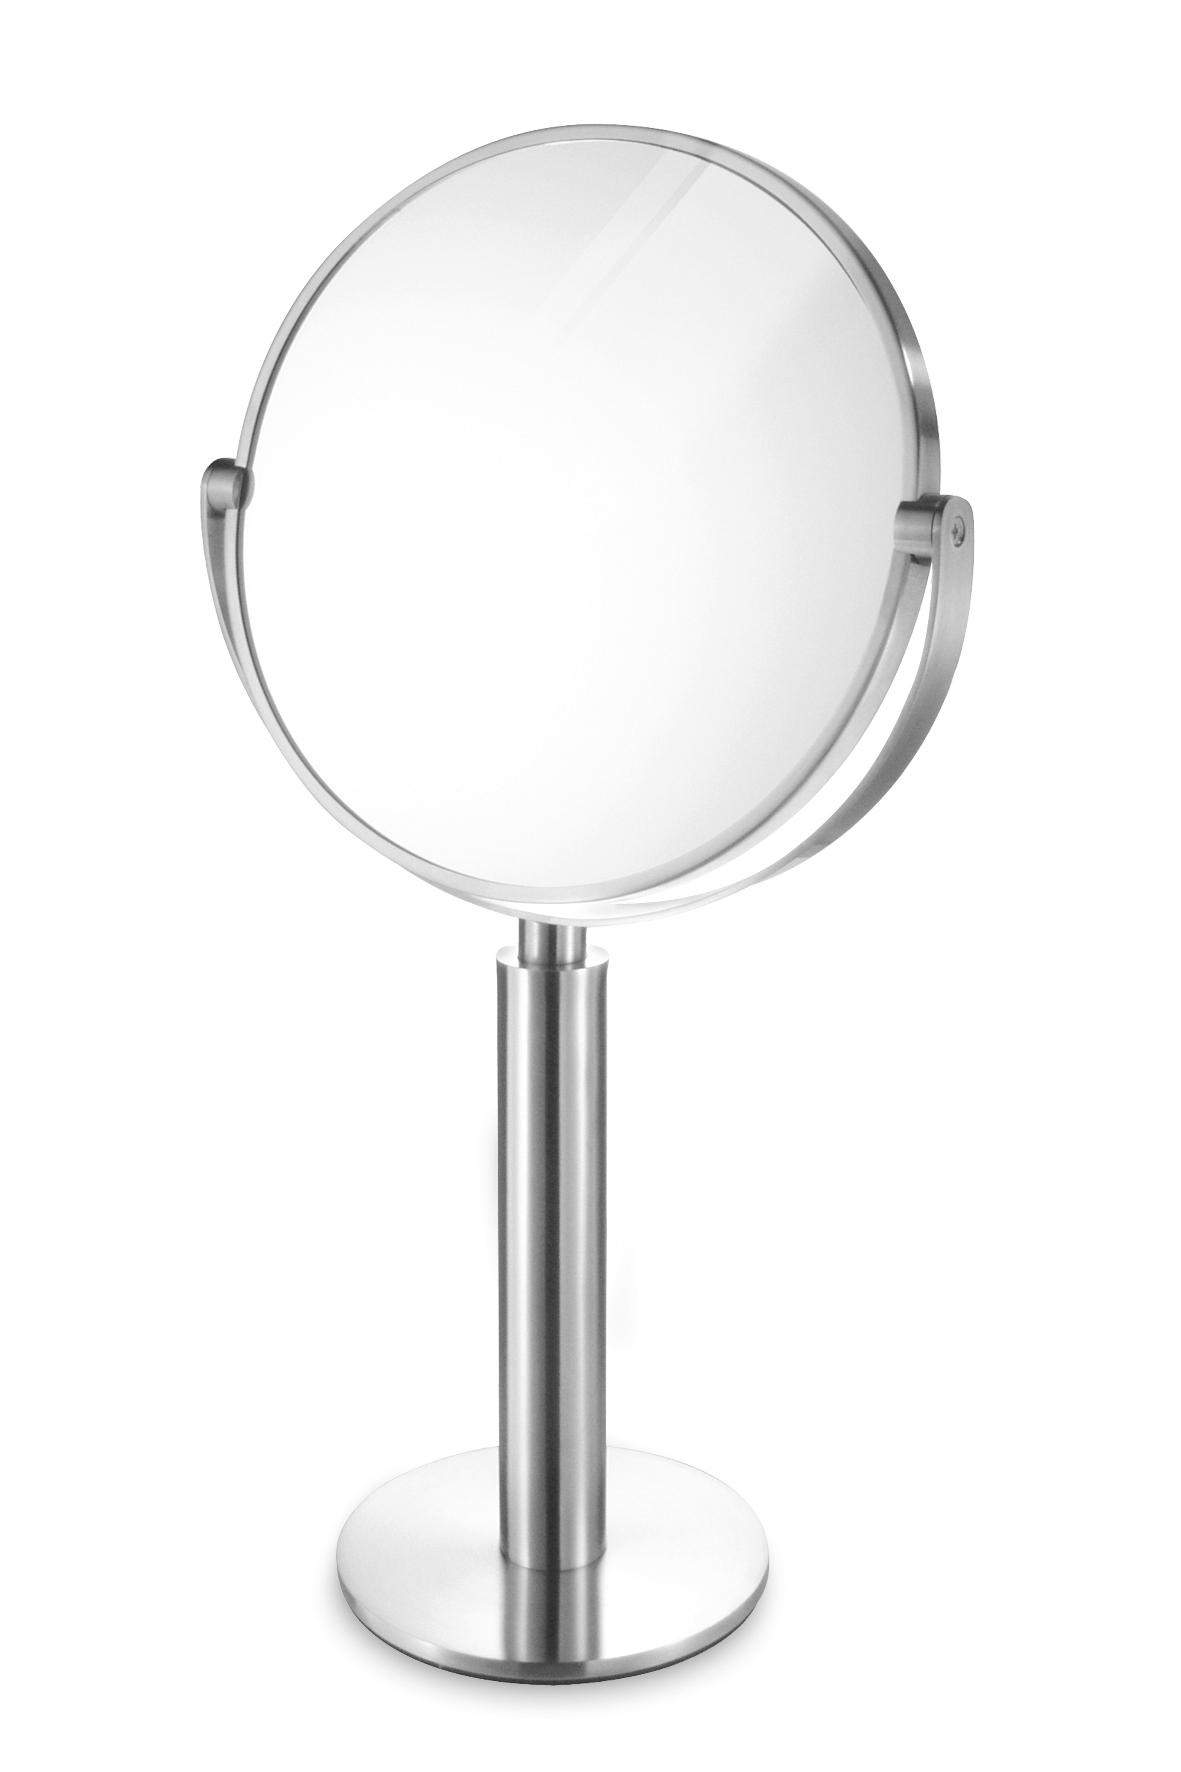 Kosmetické zrcadlo stojací nerezové broušené FELICE ZACK